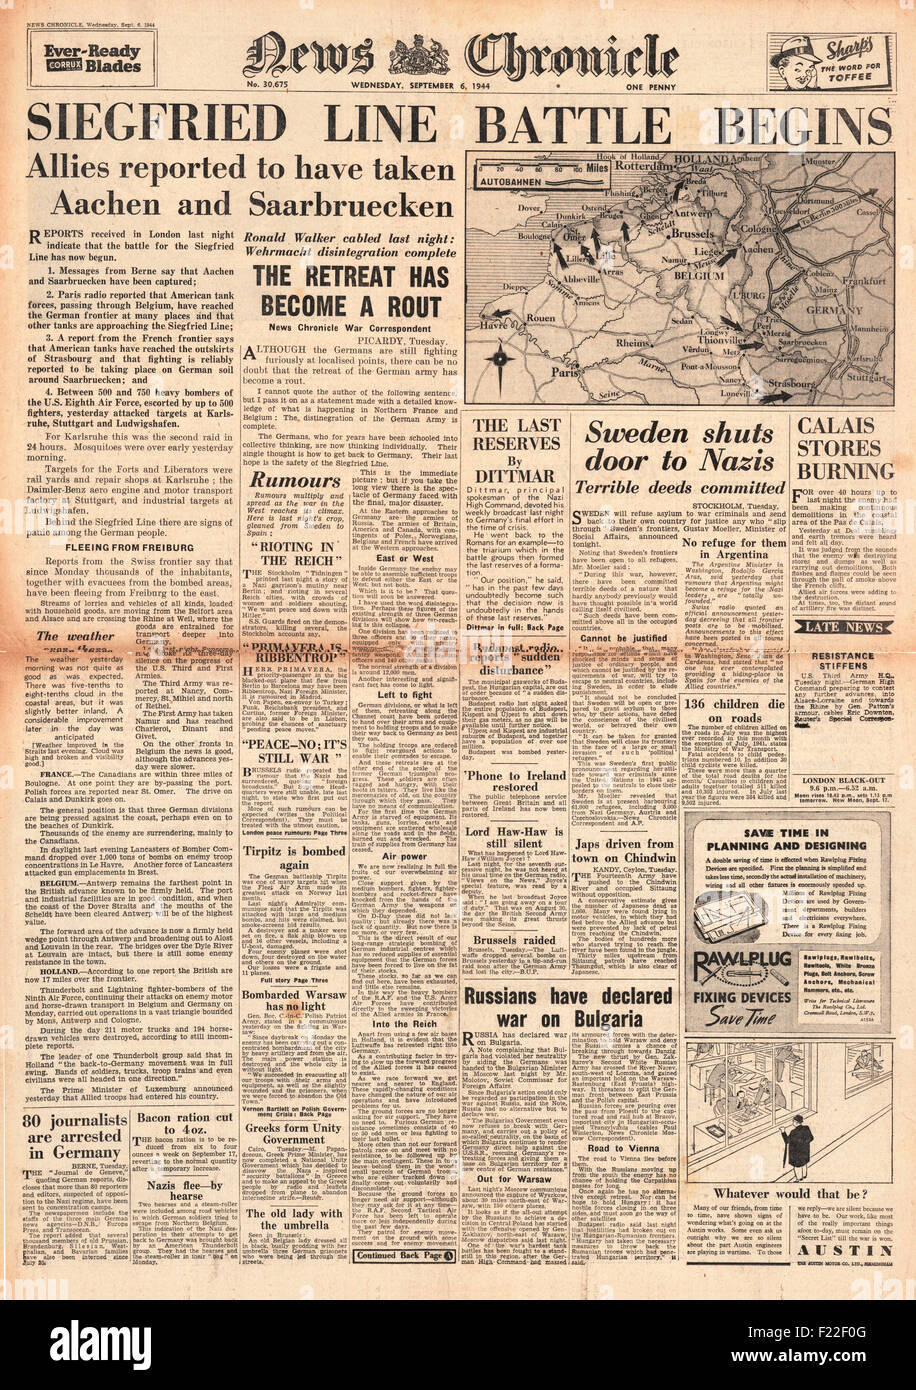 1944 News Chronicle page avant la bataille de rapports pour la ligne Siegfried et la Russie déclare la guerre à la Bulgarie Banque D'Images